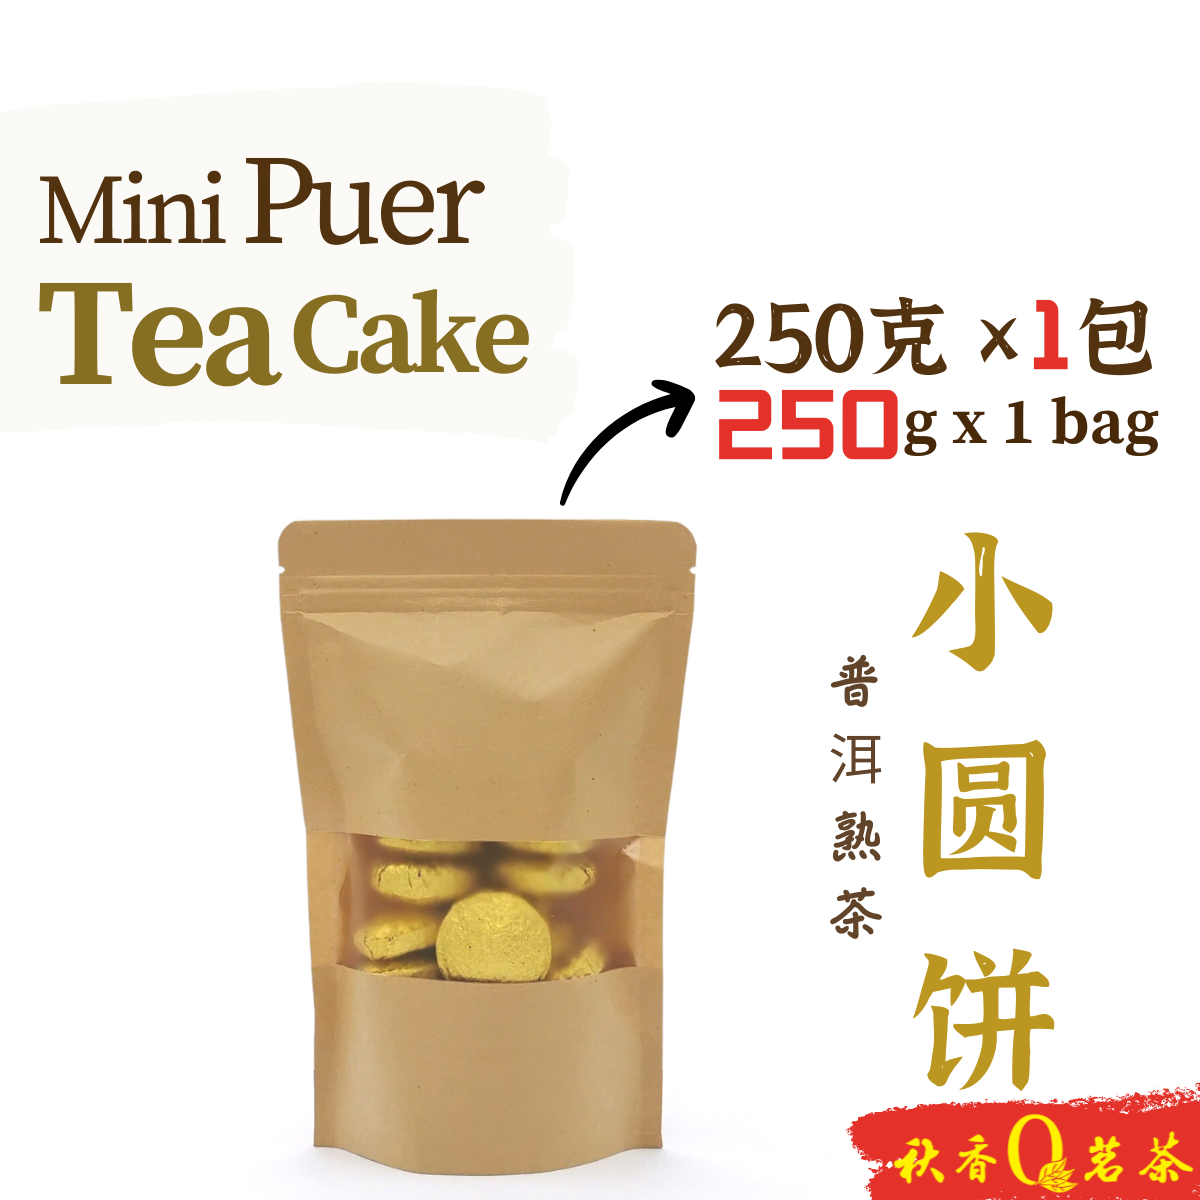 小圆饼 Mini Puer Tea Cake (2019)【250g】|【普洱熟茶 Ripe Puer tea】